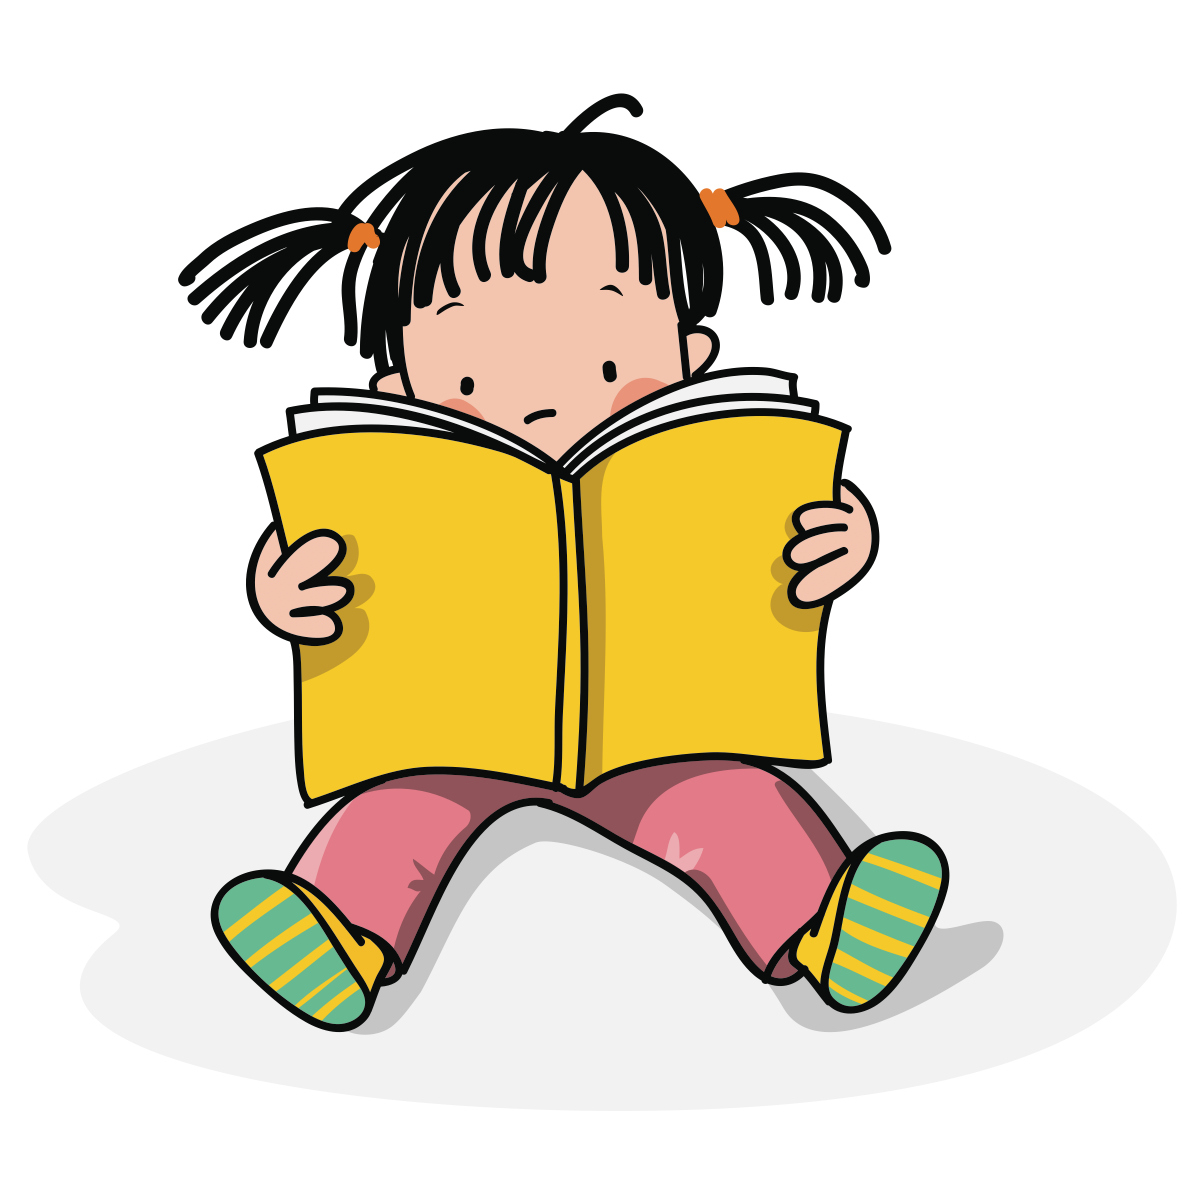 RÃ©sultat de recherche d'images pour "image un enfant qui lit"